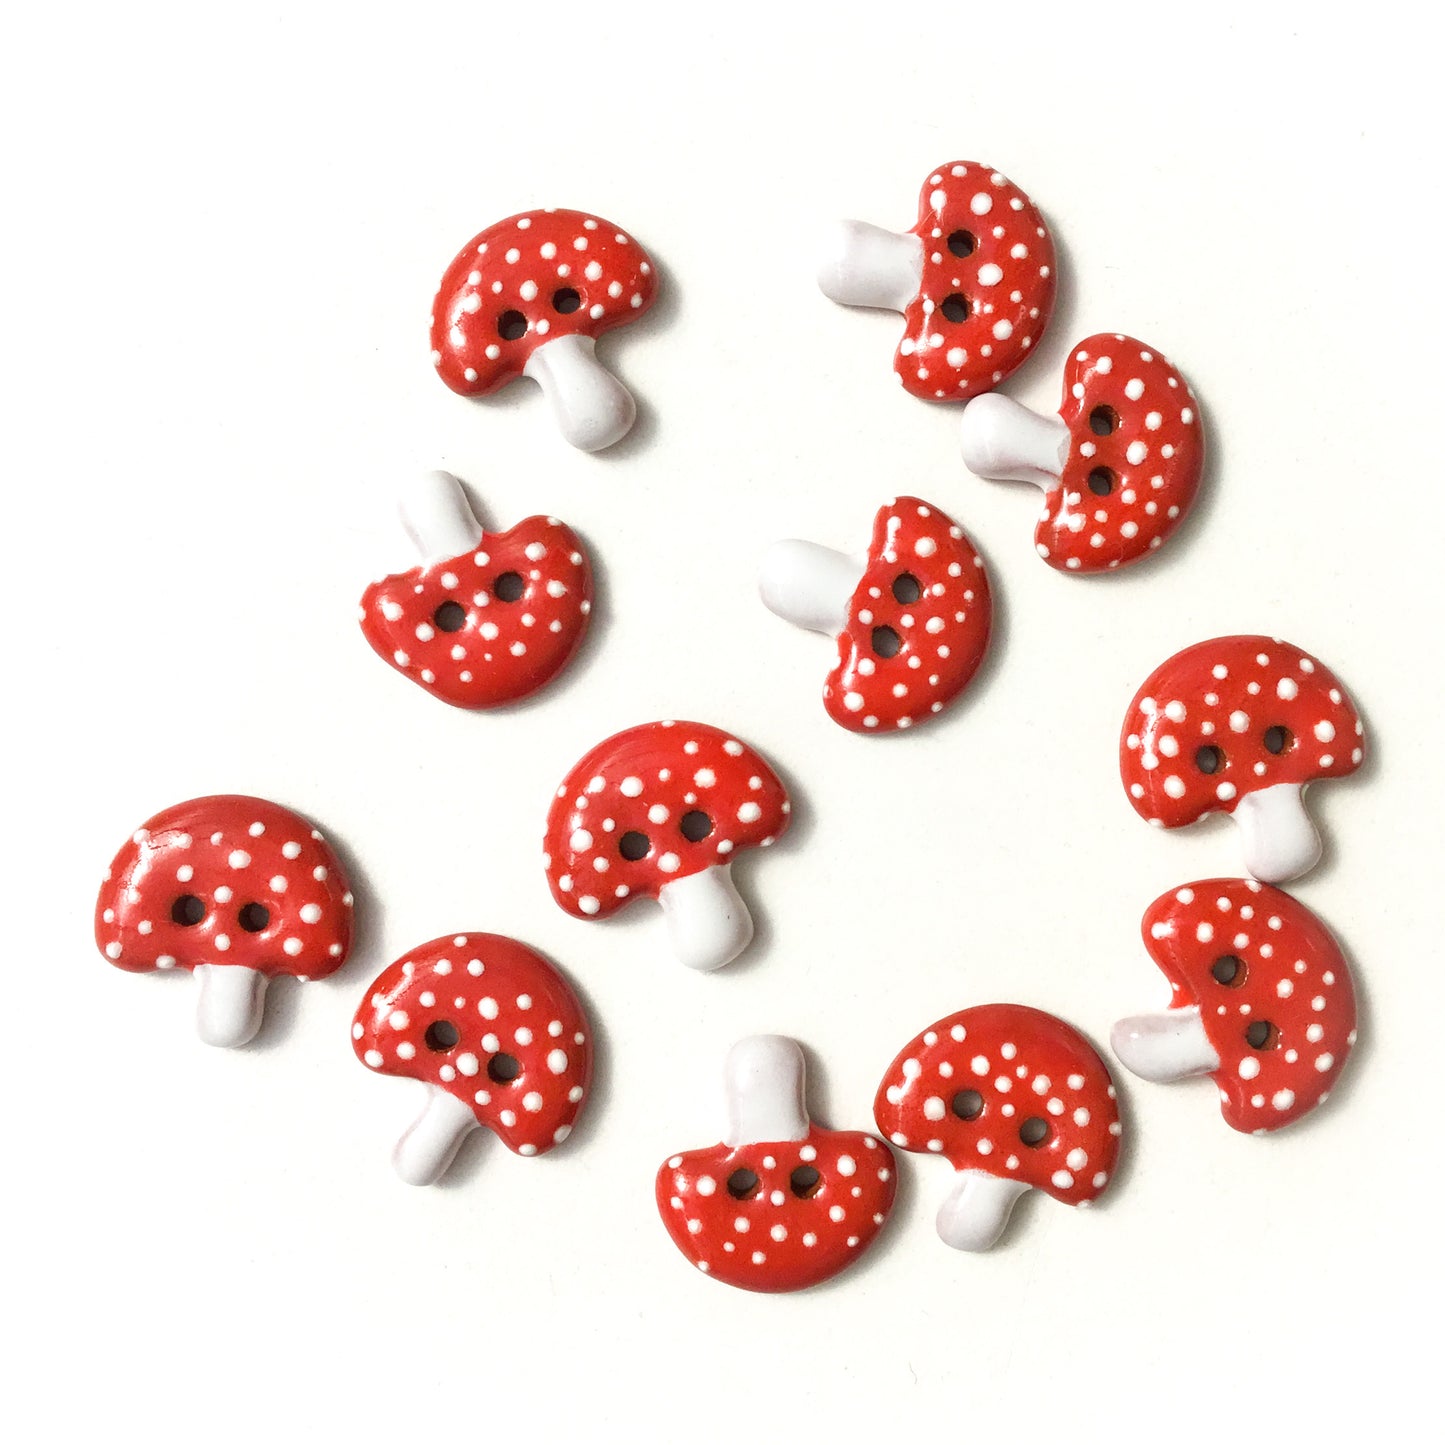 Red Mushroom Buttons - Ceramic Amanita Mushroom Buttons